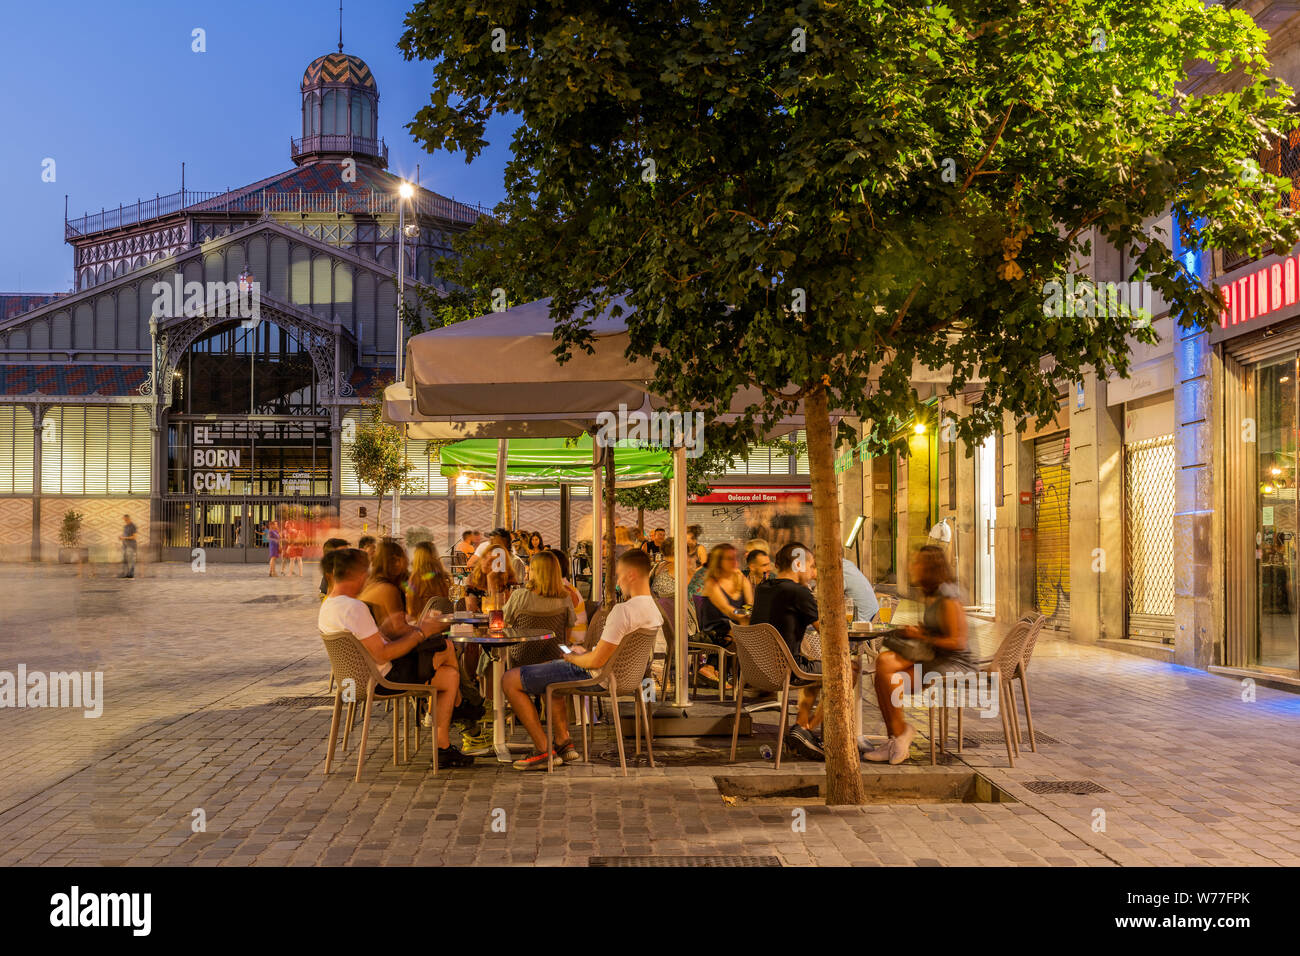 Cafetería al aire libre con el Mercat del Born mercado público detrás, Barcelona, Cataluña, España Foto de stock